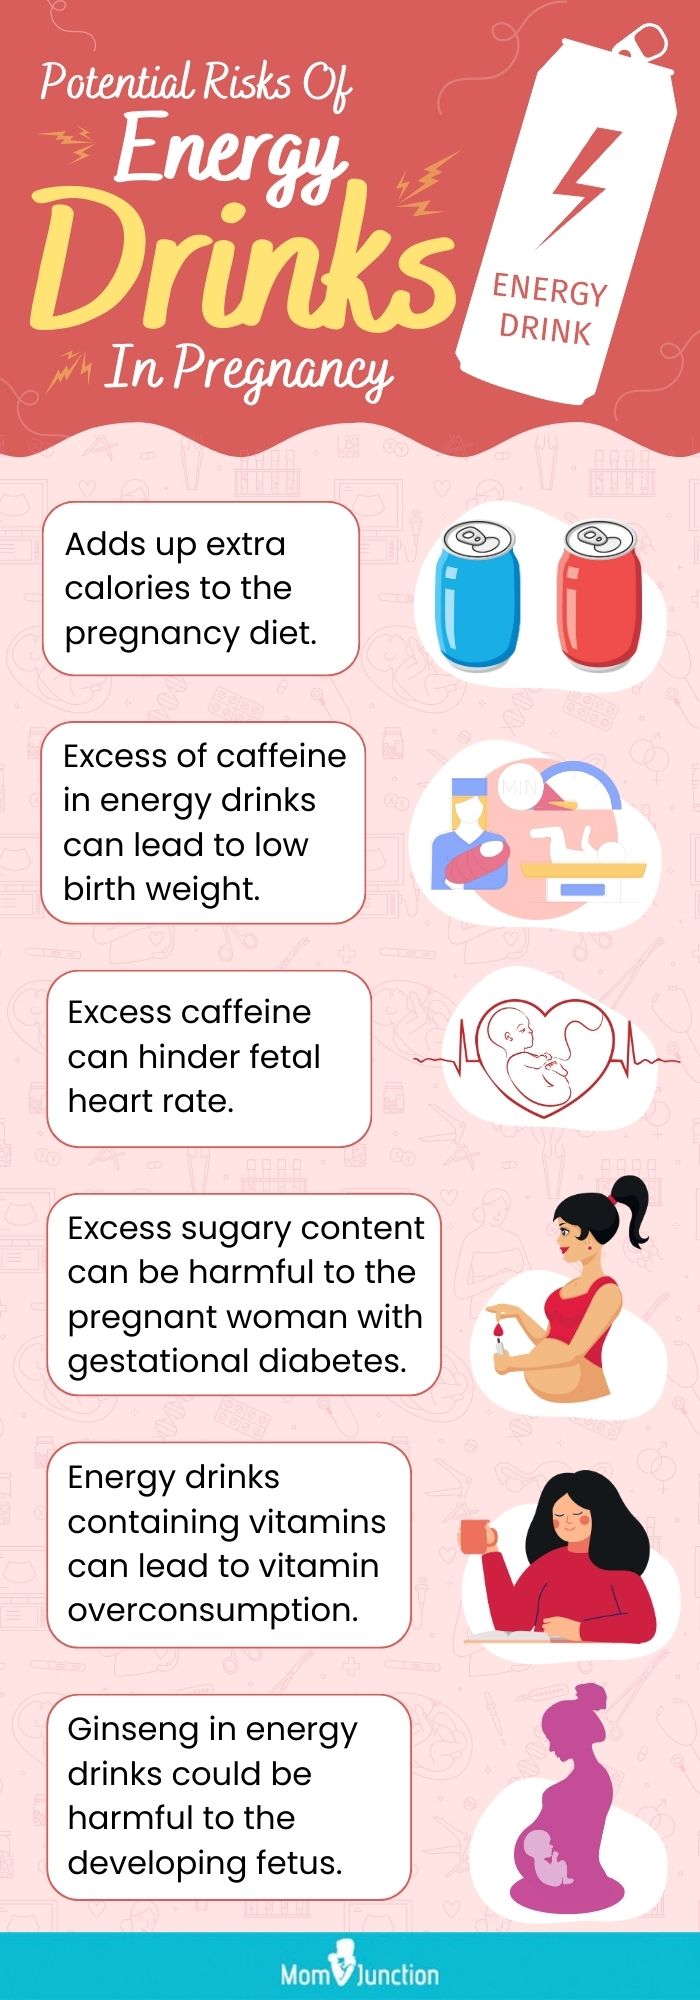 孕期饮用能量饮料的潜在风险(信息图)